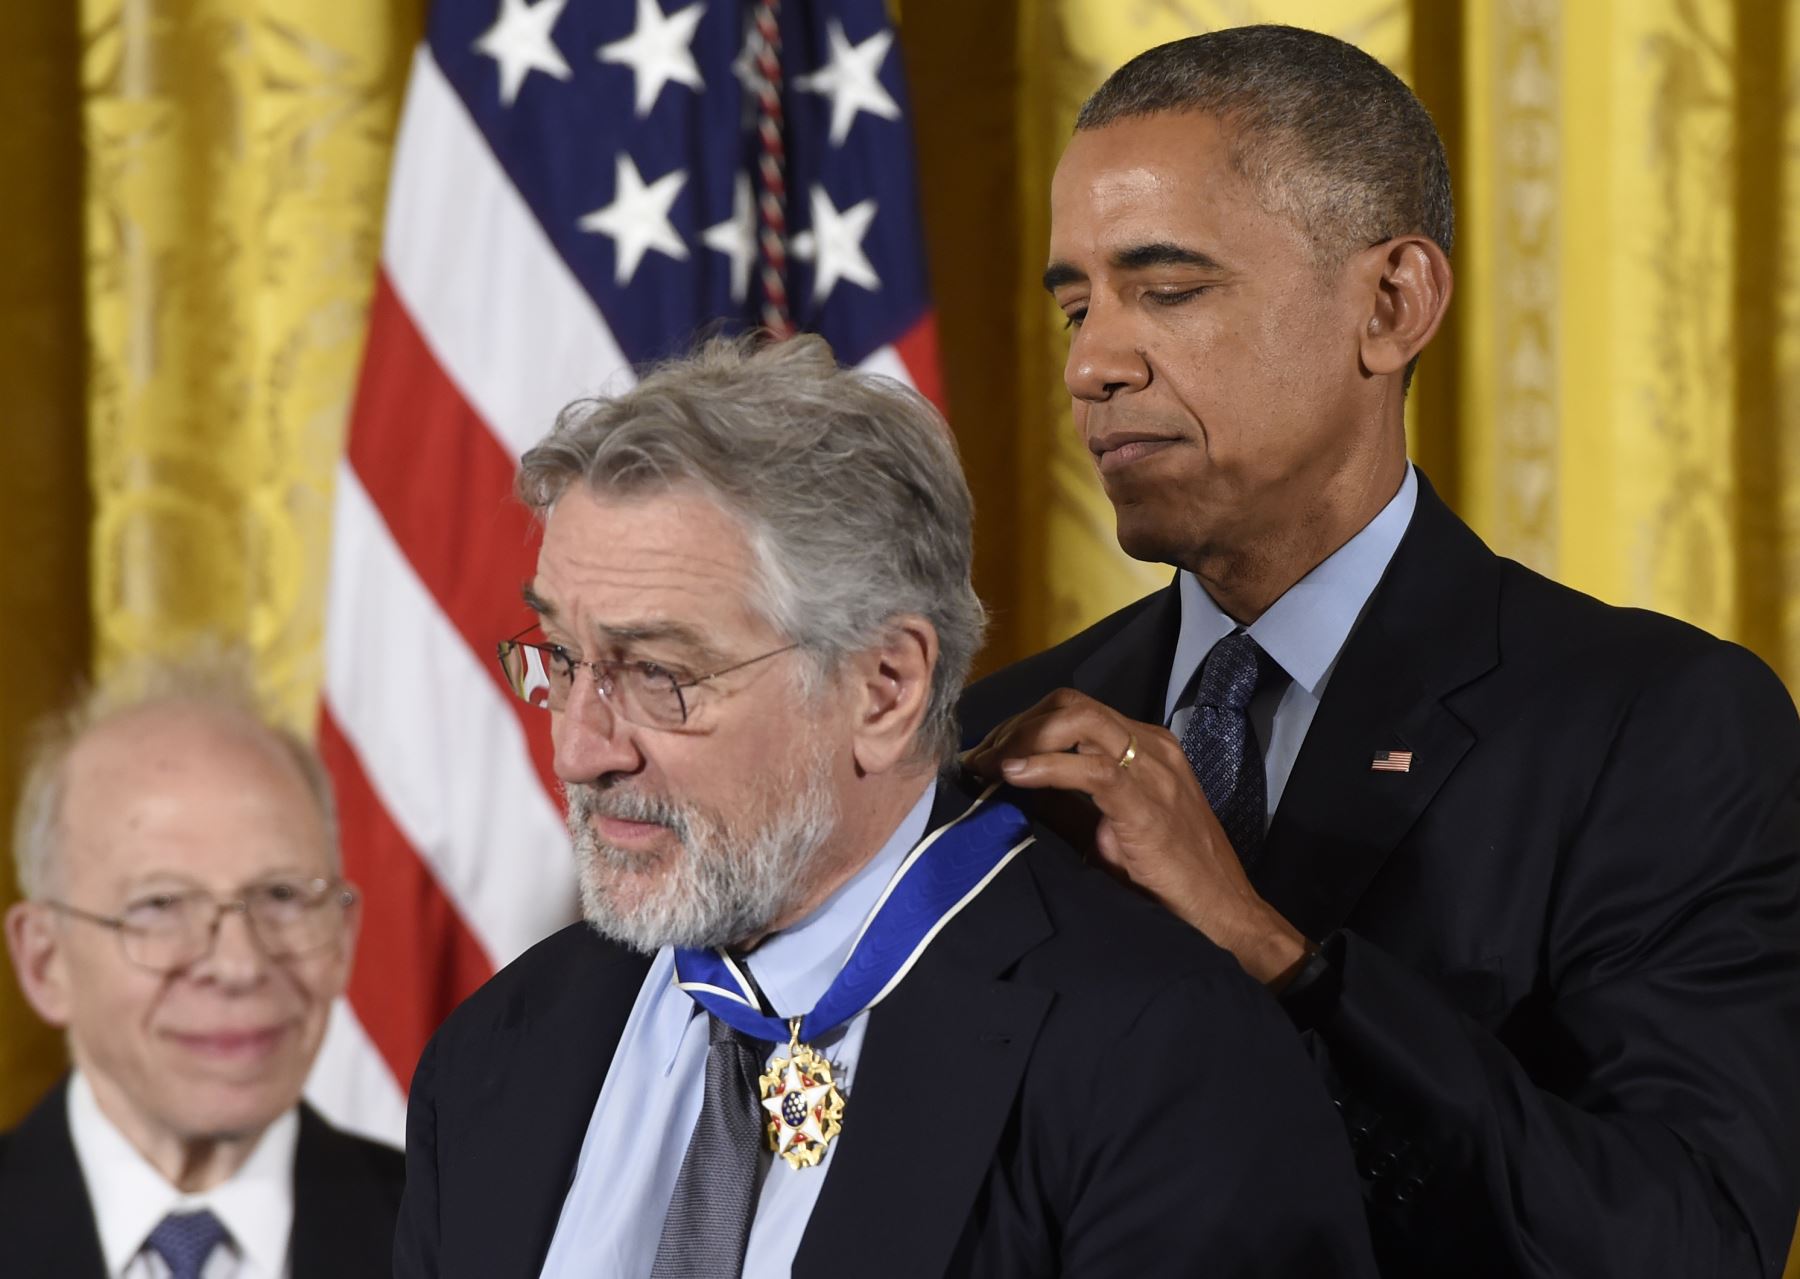 El presidente de los Estados Unidos, Barack Obama, presenta al actor Robert De Niro con la Medalla Presidencial de la Libertad, el honor civil más importante de la nación, durante una ceremonia en honor a 21 destinatarios en el Salón Este de la Casa Blanca en Washington, DC, el 22 de noviembre de 2016. / AFP